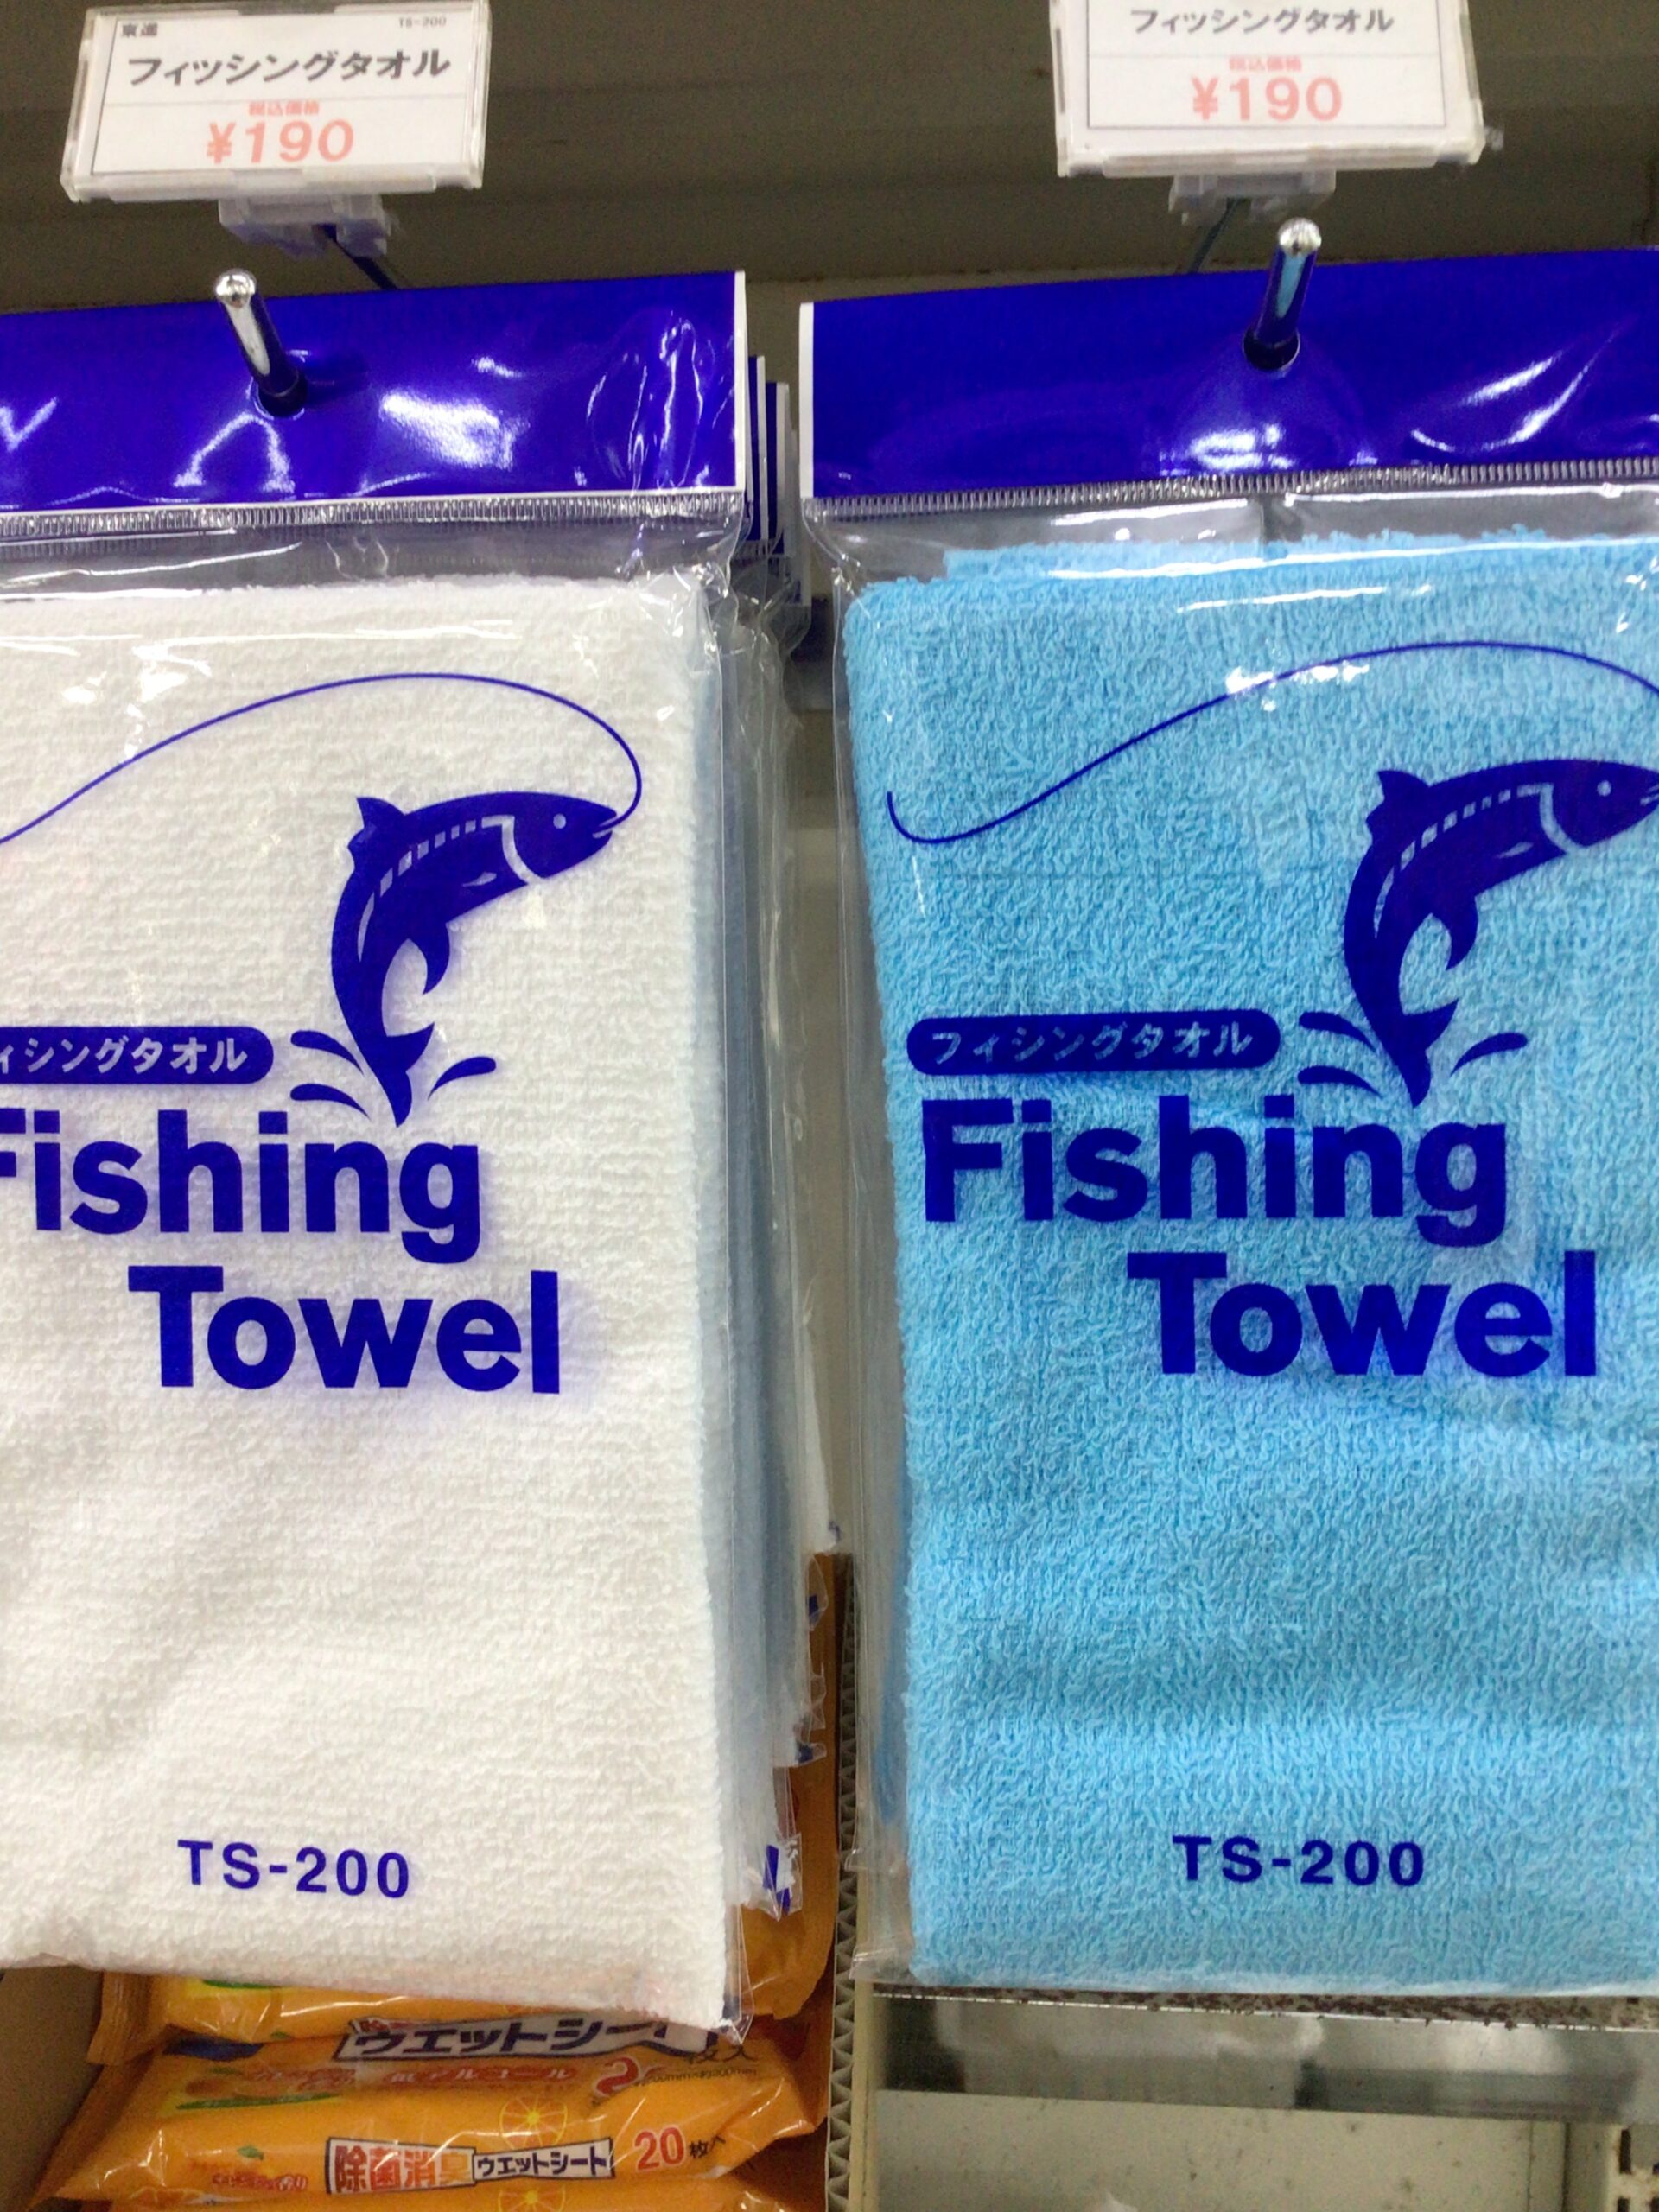 釣り時は非常に役立つタオル。忘れ物第一位のアイテム。釣太郎